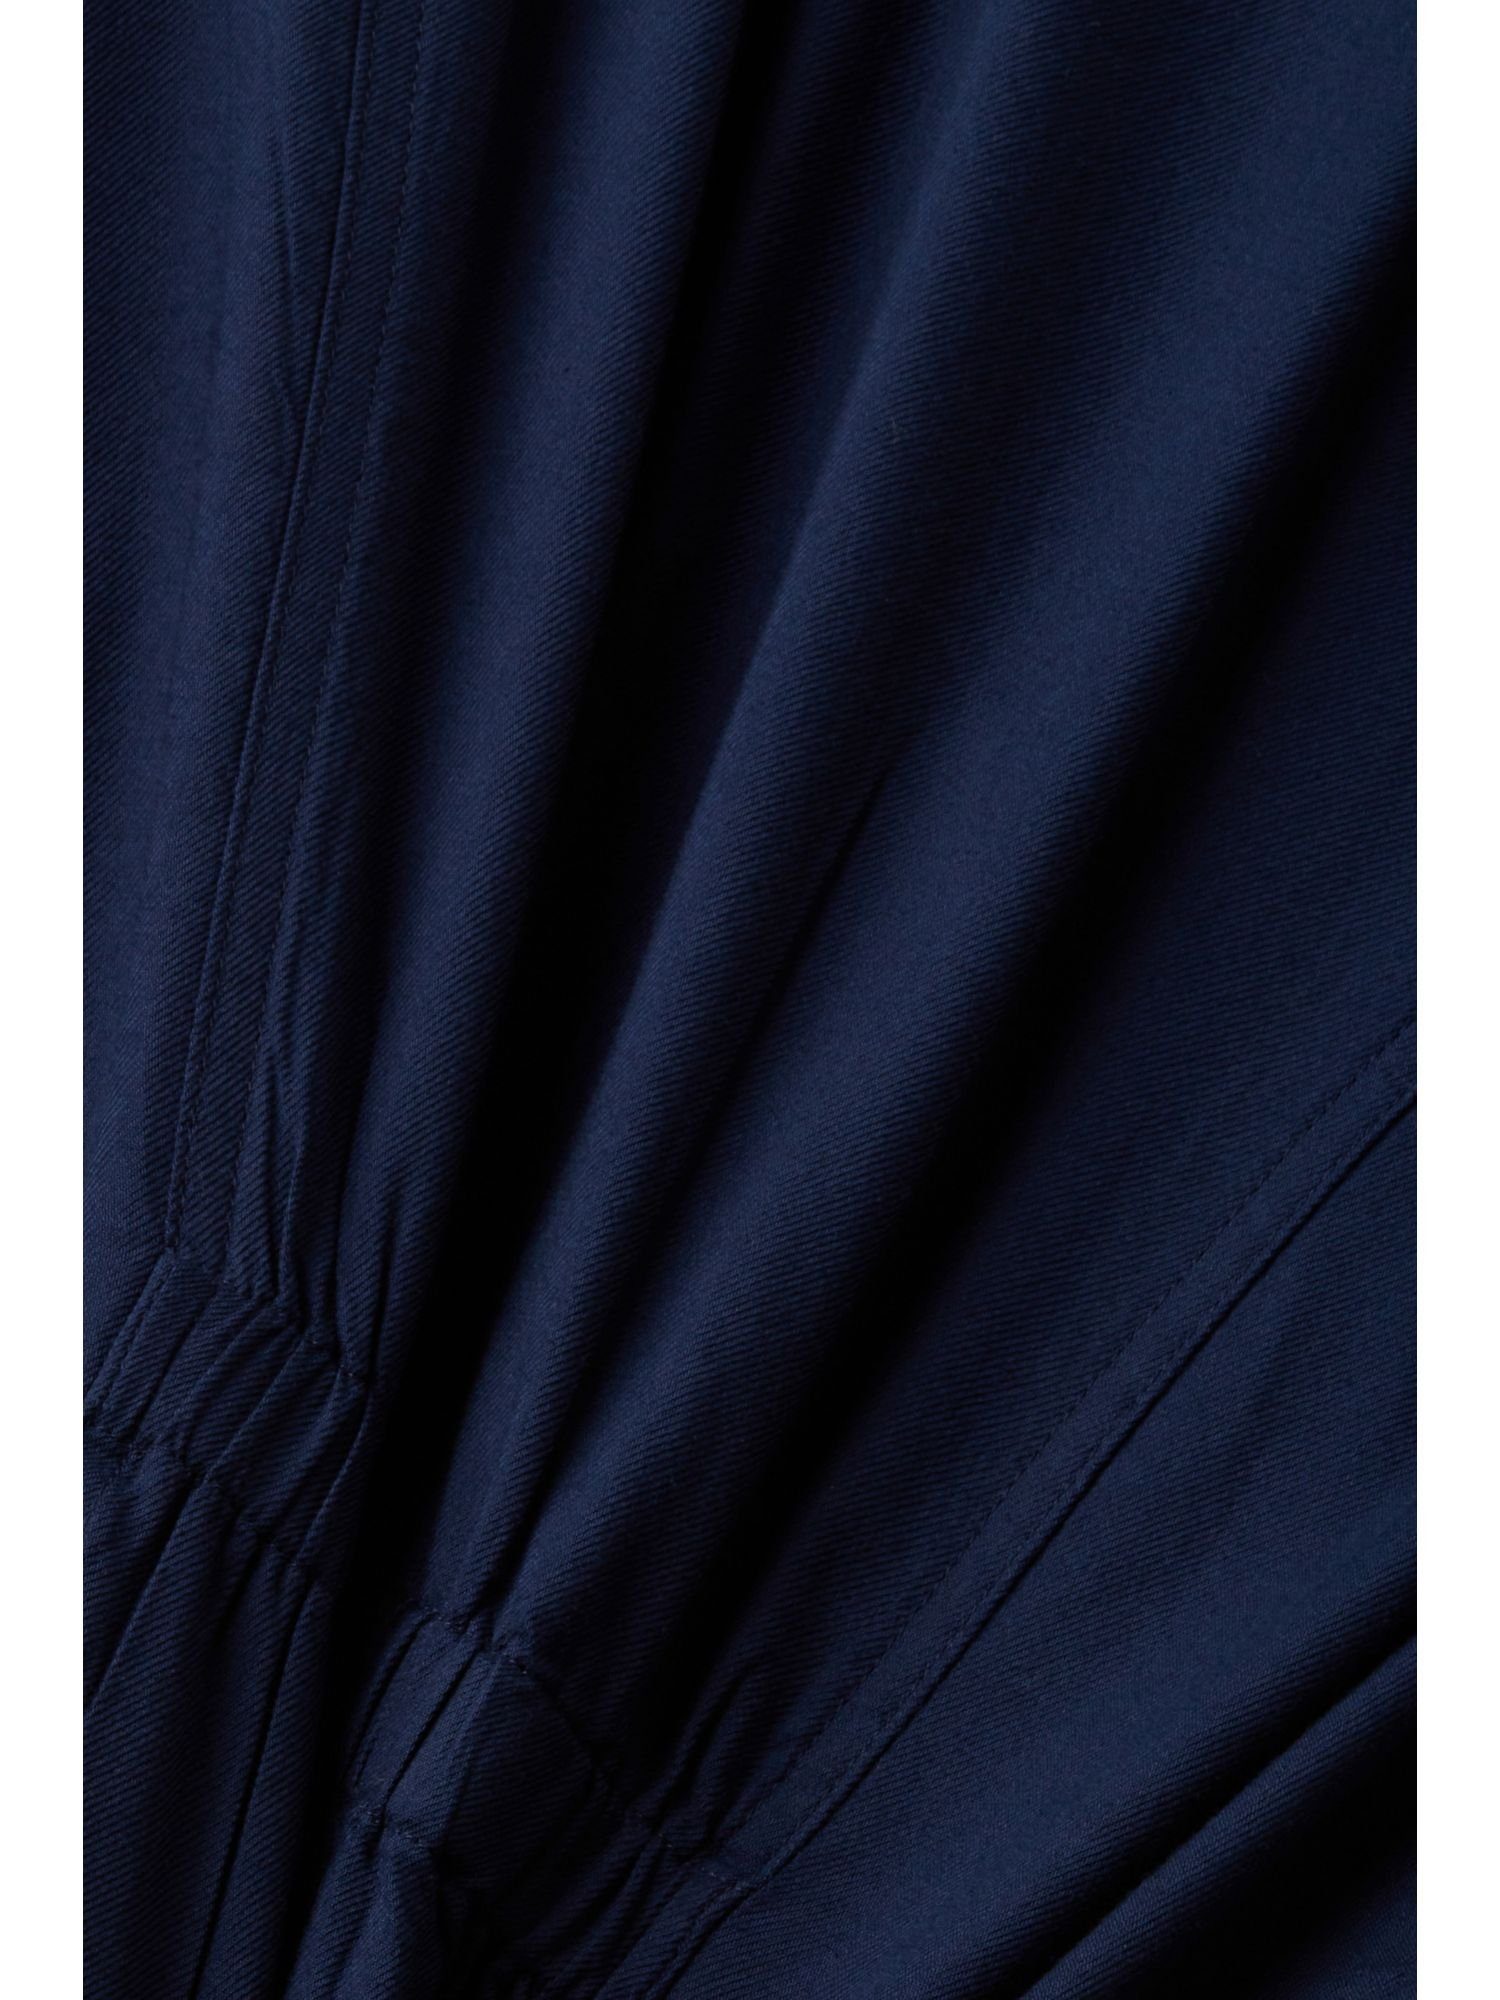 NAVY Knöpfen mit Esprit Bluse Taillierte Kurzarmbluse